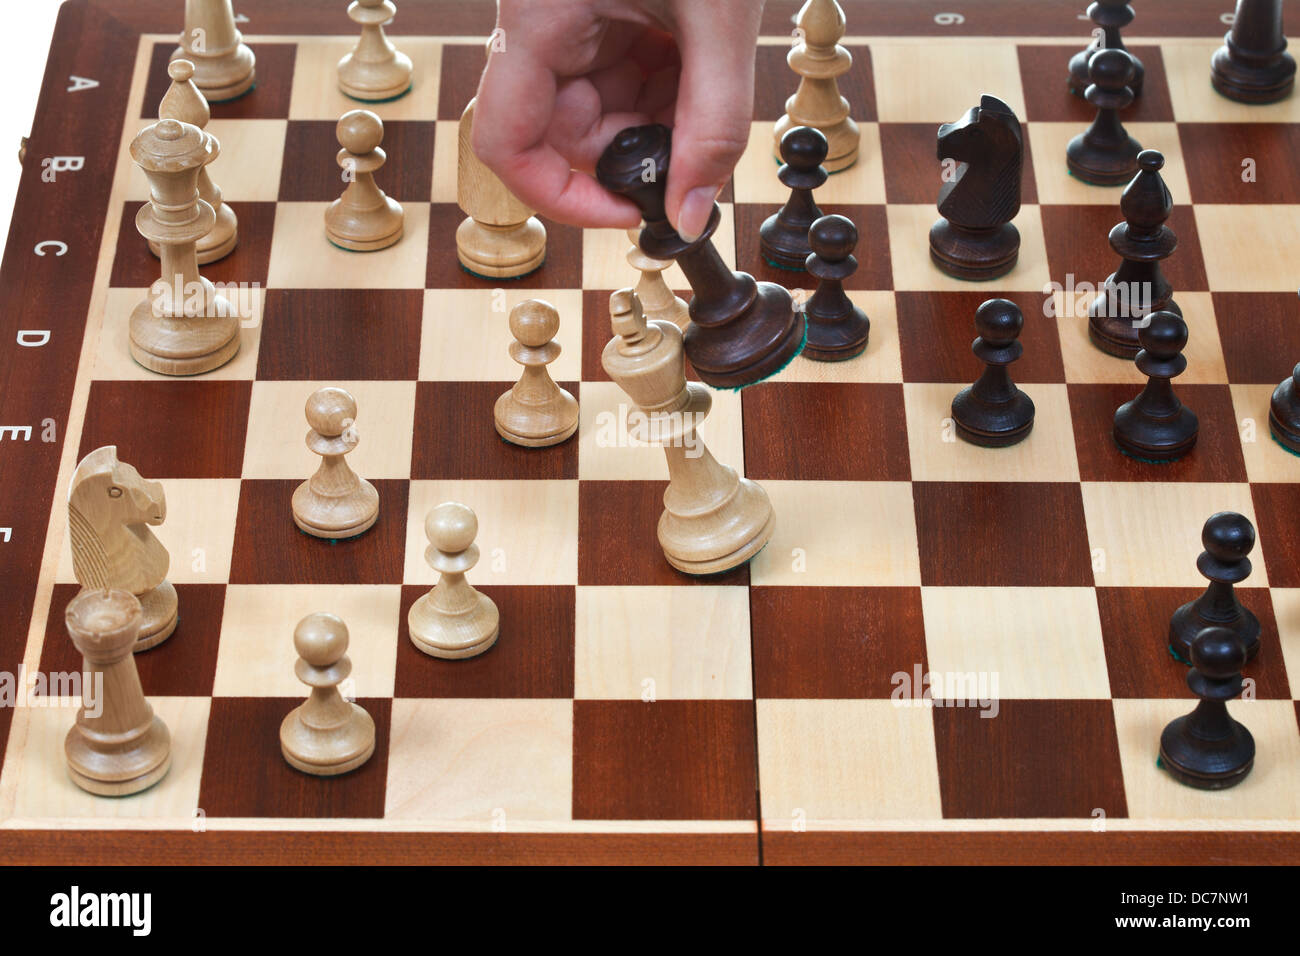 Mano con re nero bussa re bianco sulla scacchiera nel gioco degli scacchi Foto Stock